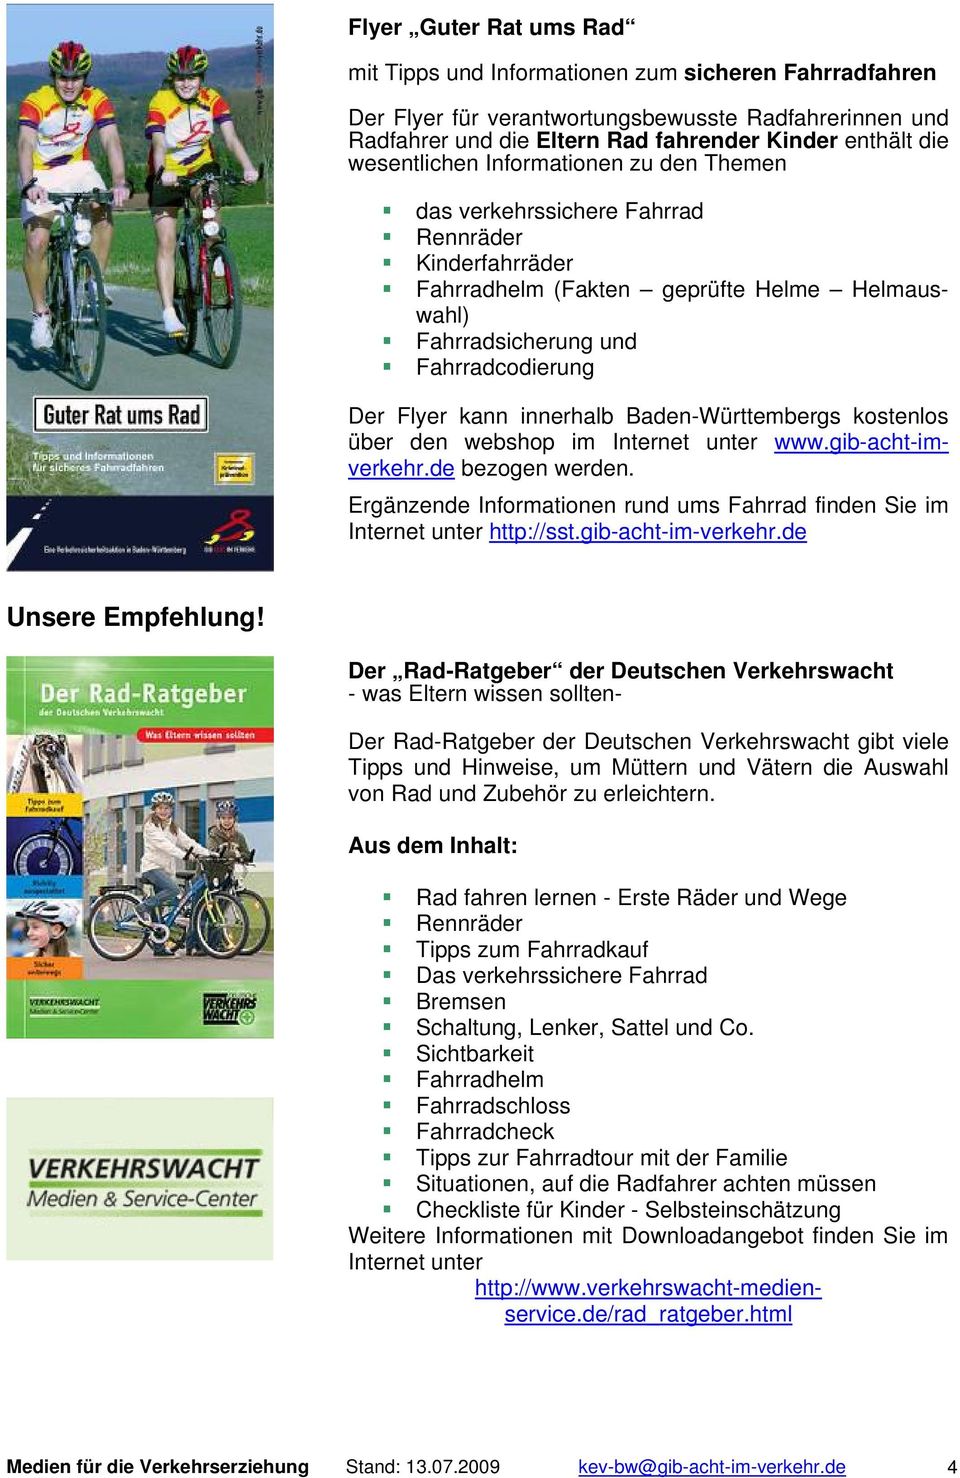 innerhalb Baden-Württembergs kostenlos über den webshop im Internet unter www.gib-acht-imverkehr.de bezogen werden. Ergänzende Informationen rund ums Fahrrad finden Sie im Internet unter http://sst.